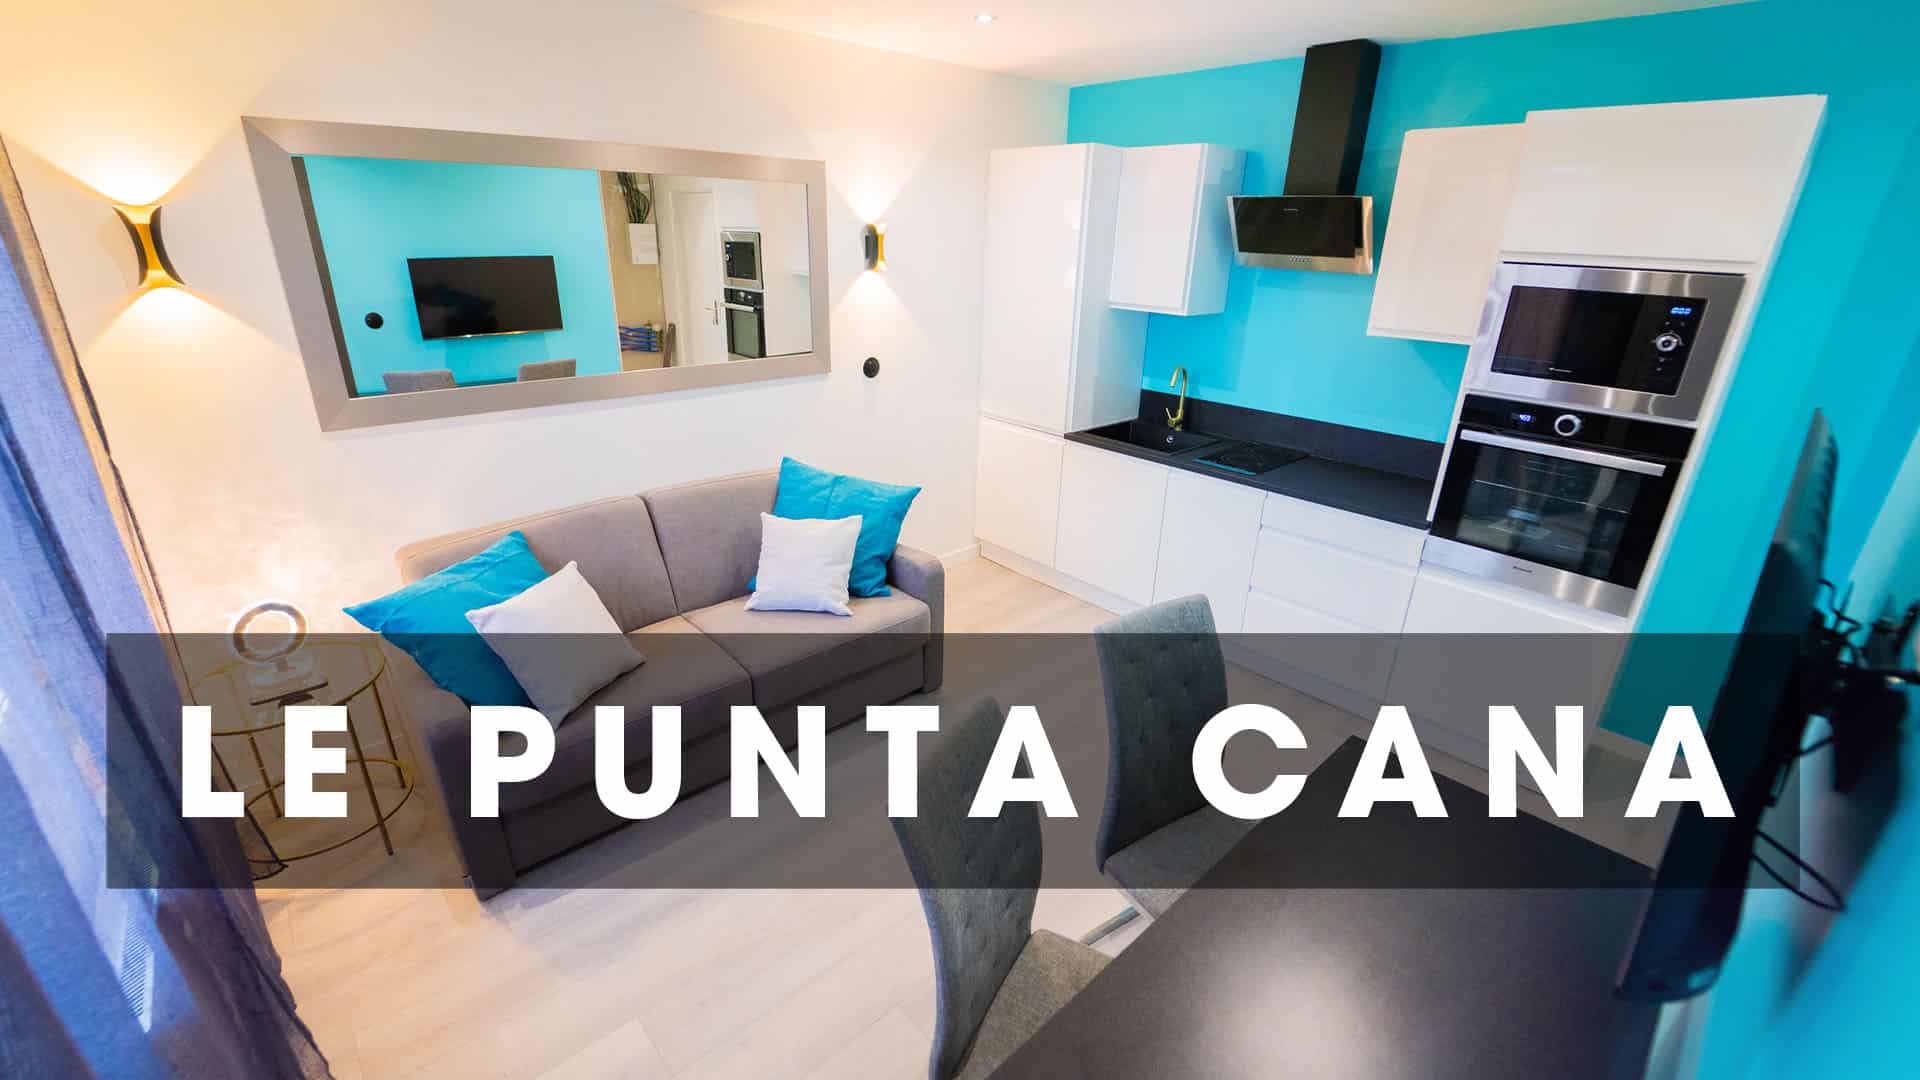 Turquoise location Le Punta Cana Le Punta Cana